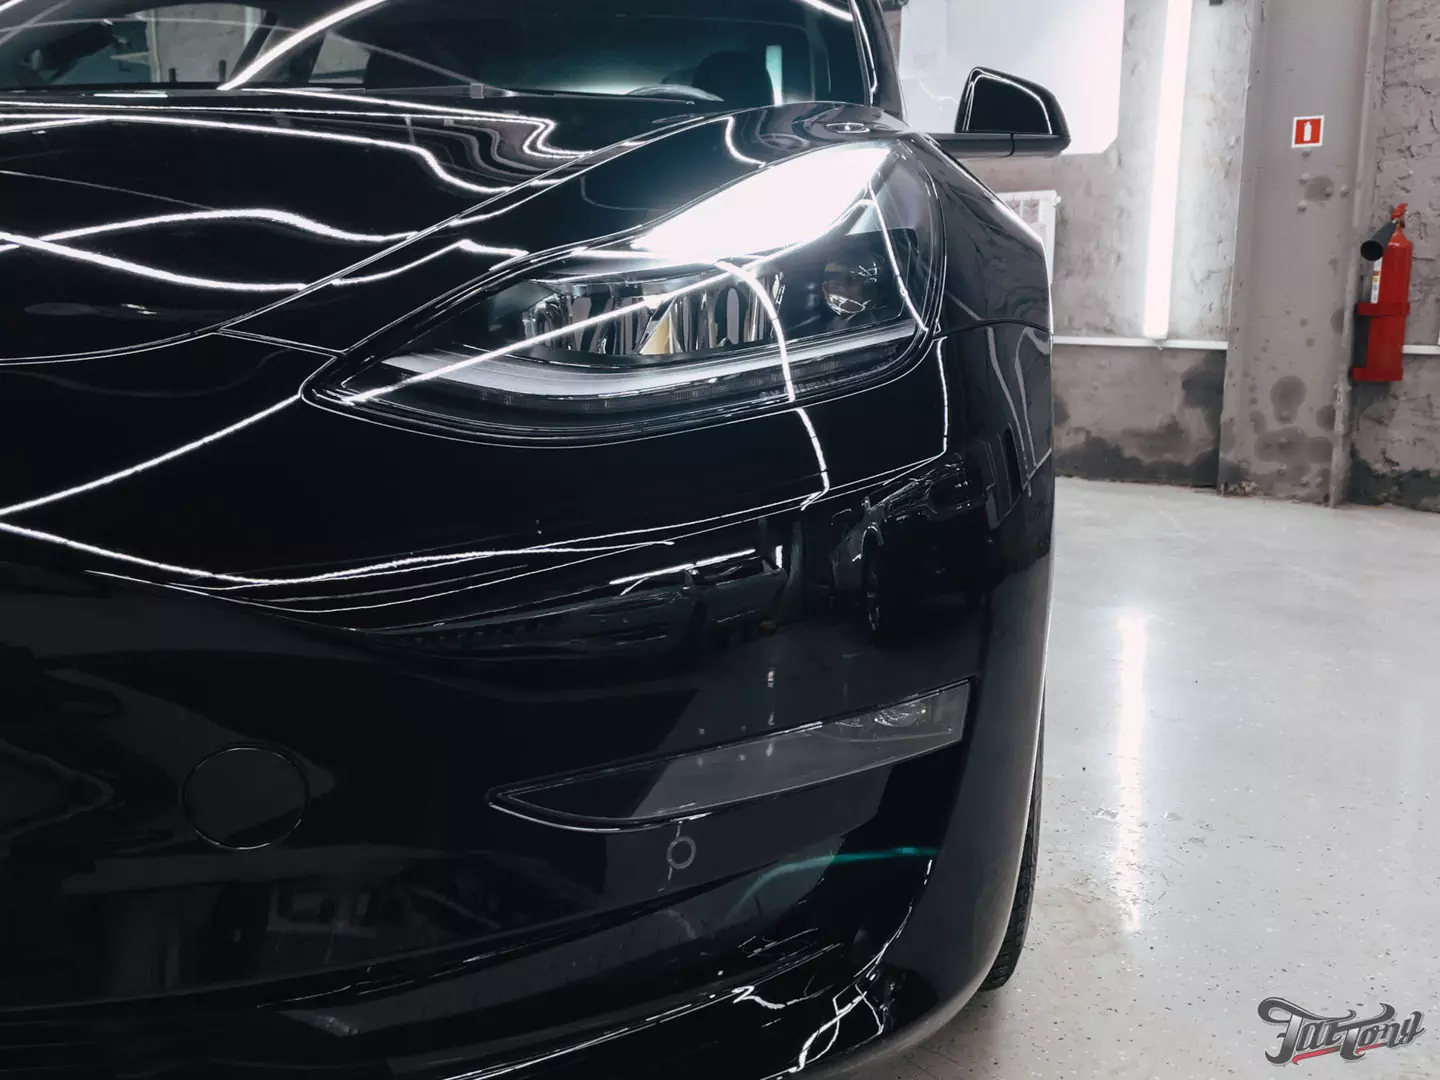 Ремонт и окрас бампера на Tesla Model 3, оклейка в полиуретан, окрас суппортов, новый спойлер, шиномонтаж на Hunter